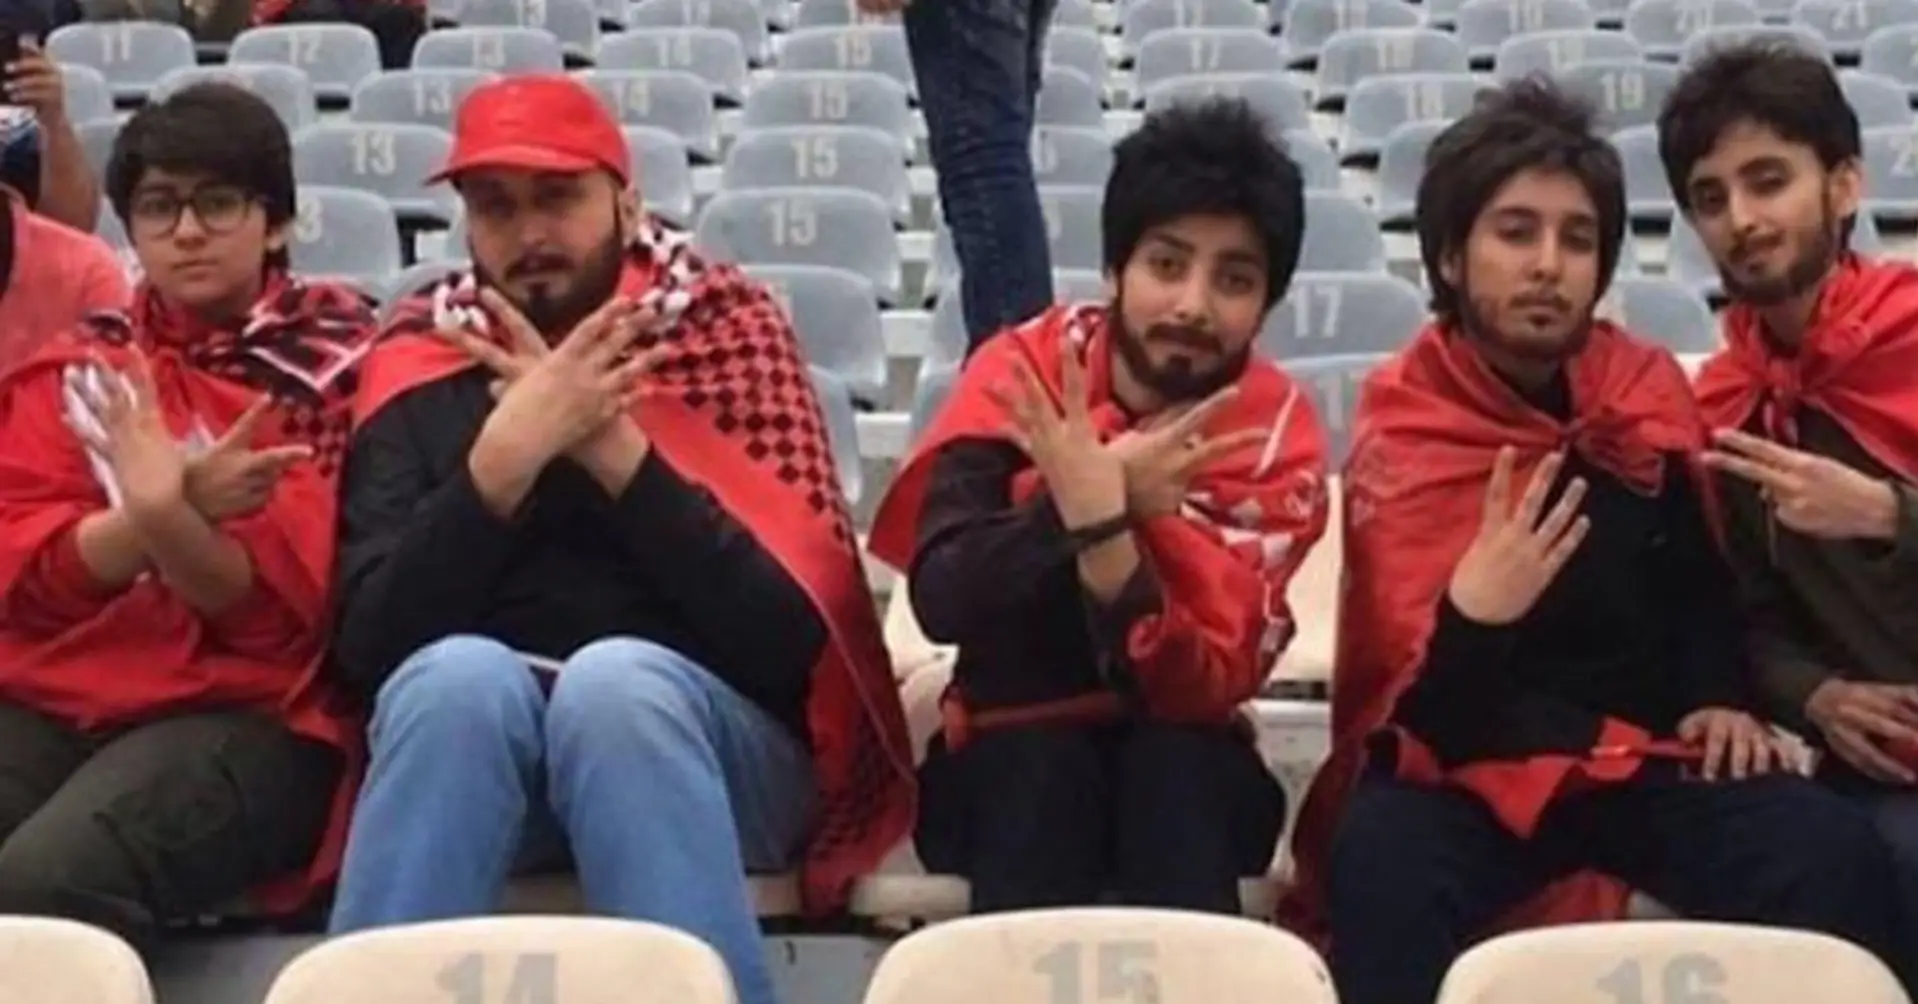 Les femmes ne sont pas autorisées à assister aux matchs de football en Iran - mais ces 5 braves garçons ont totalement apprécié le match